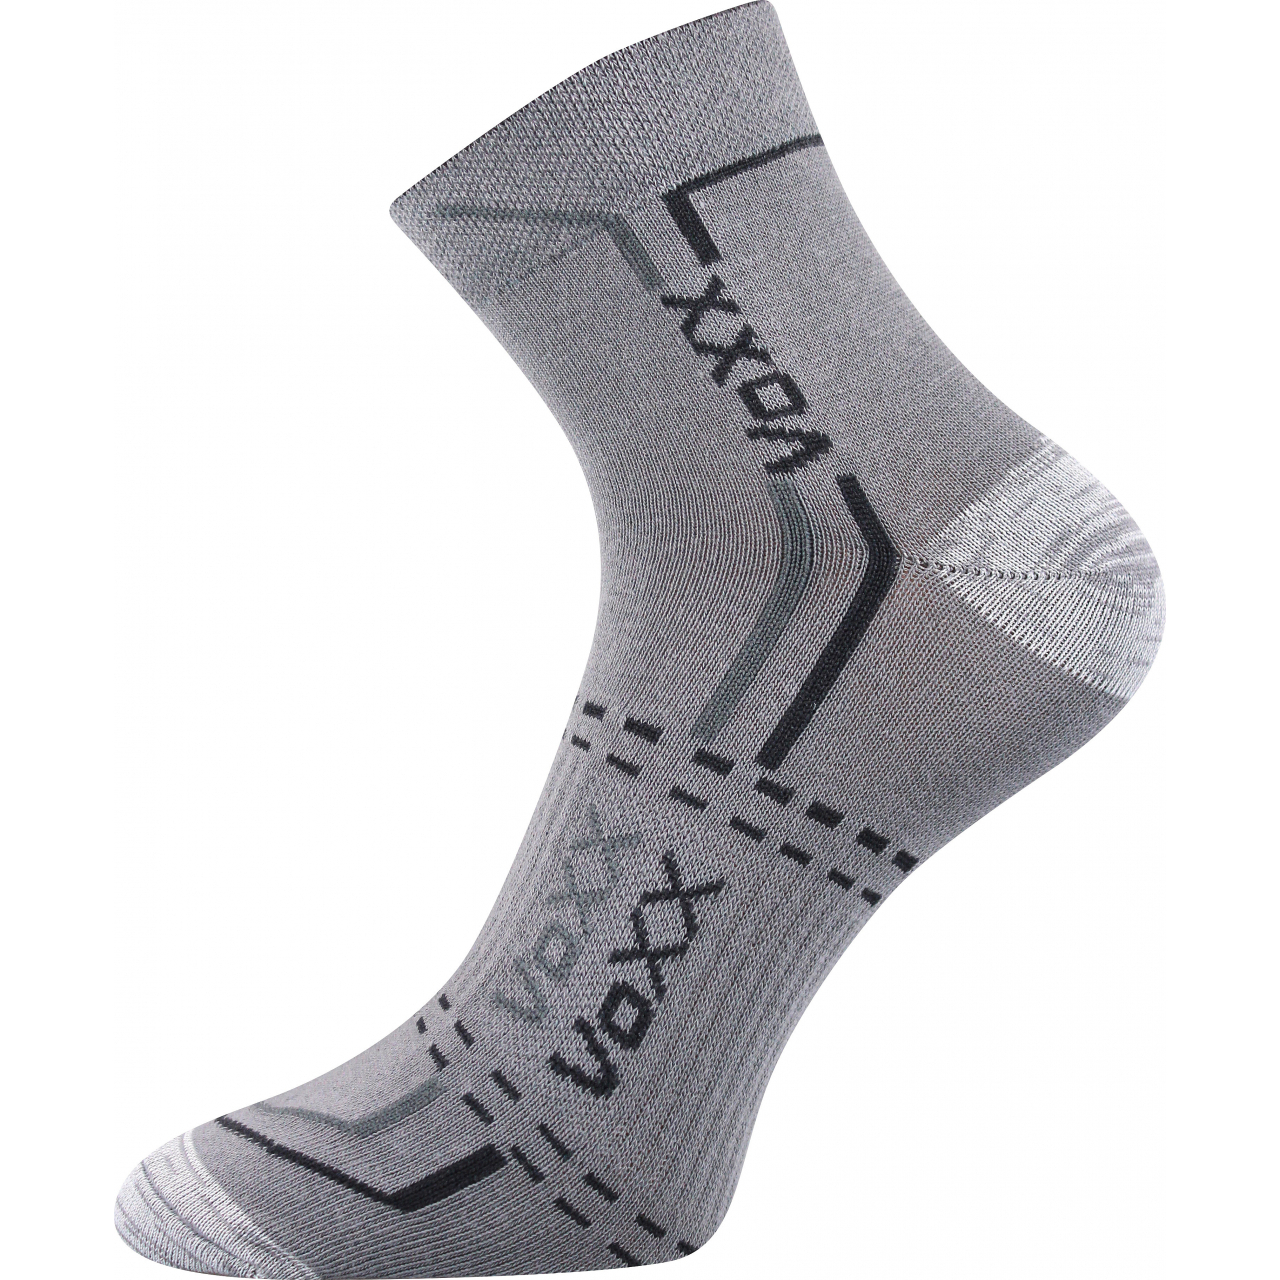 Ponožky unisex klasické Voxx Franz 03 - světle šedé, 35-38